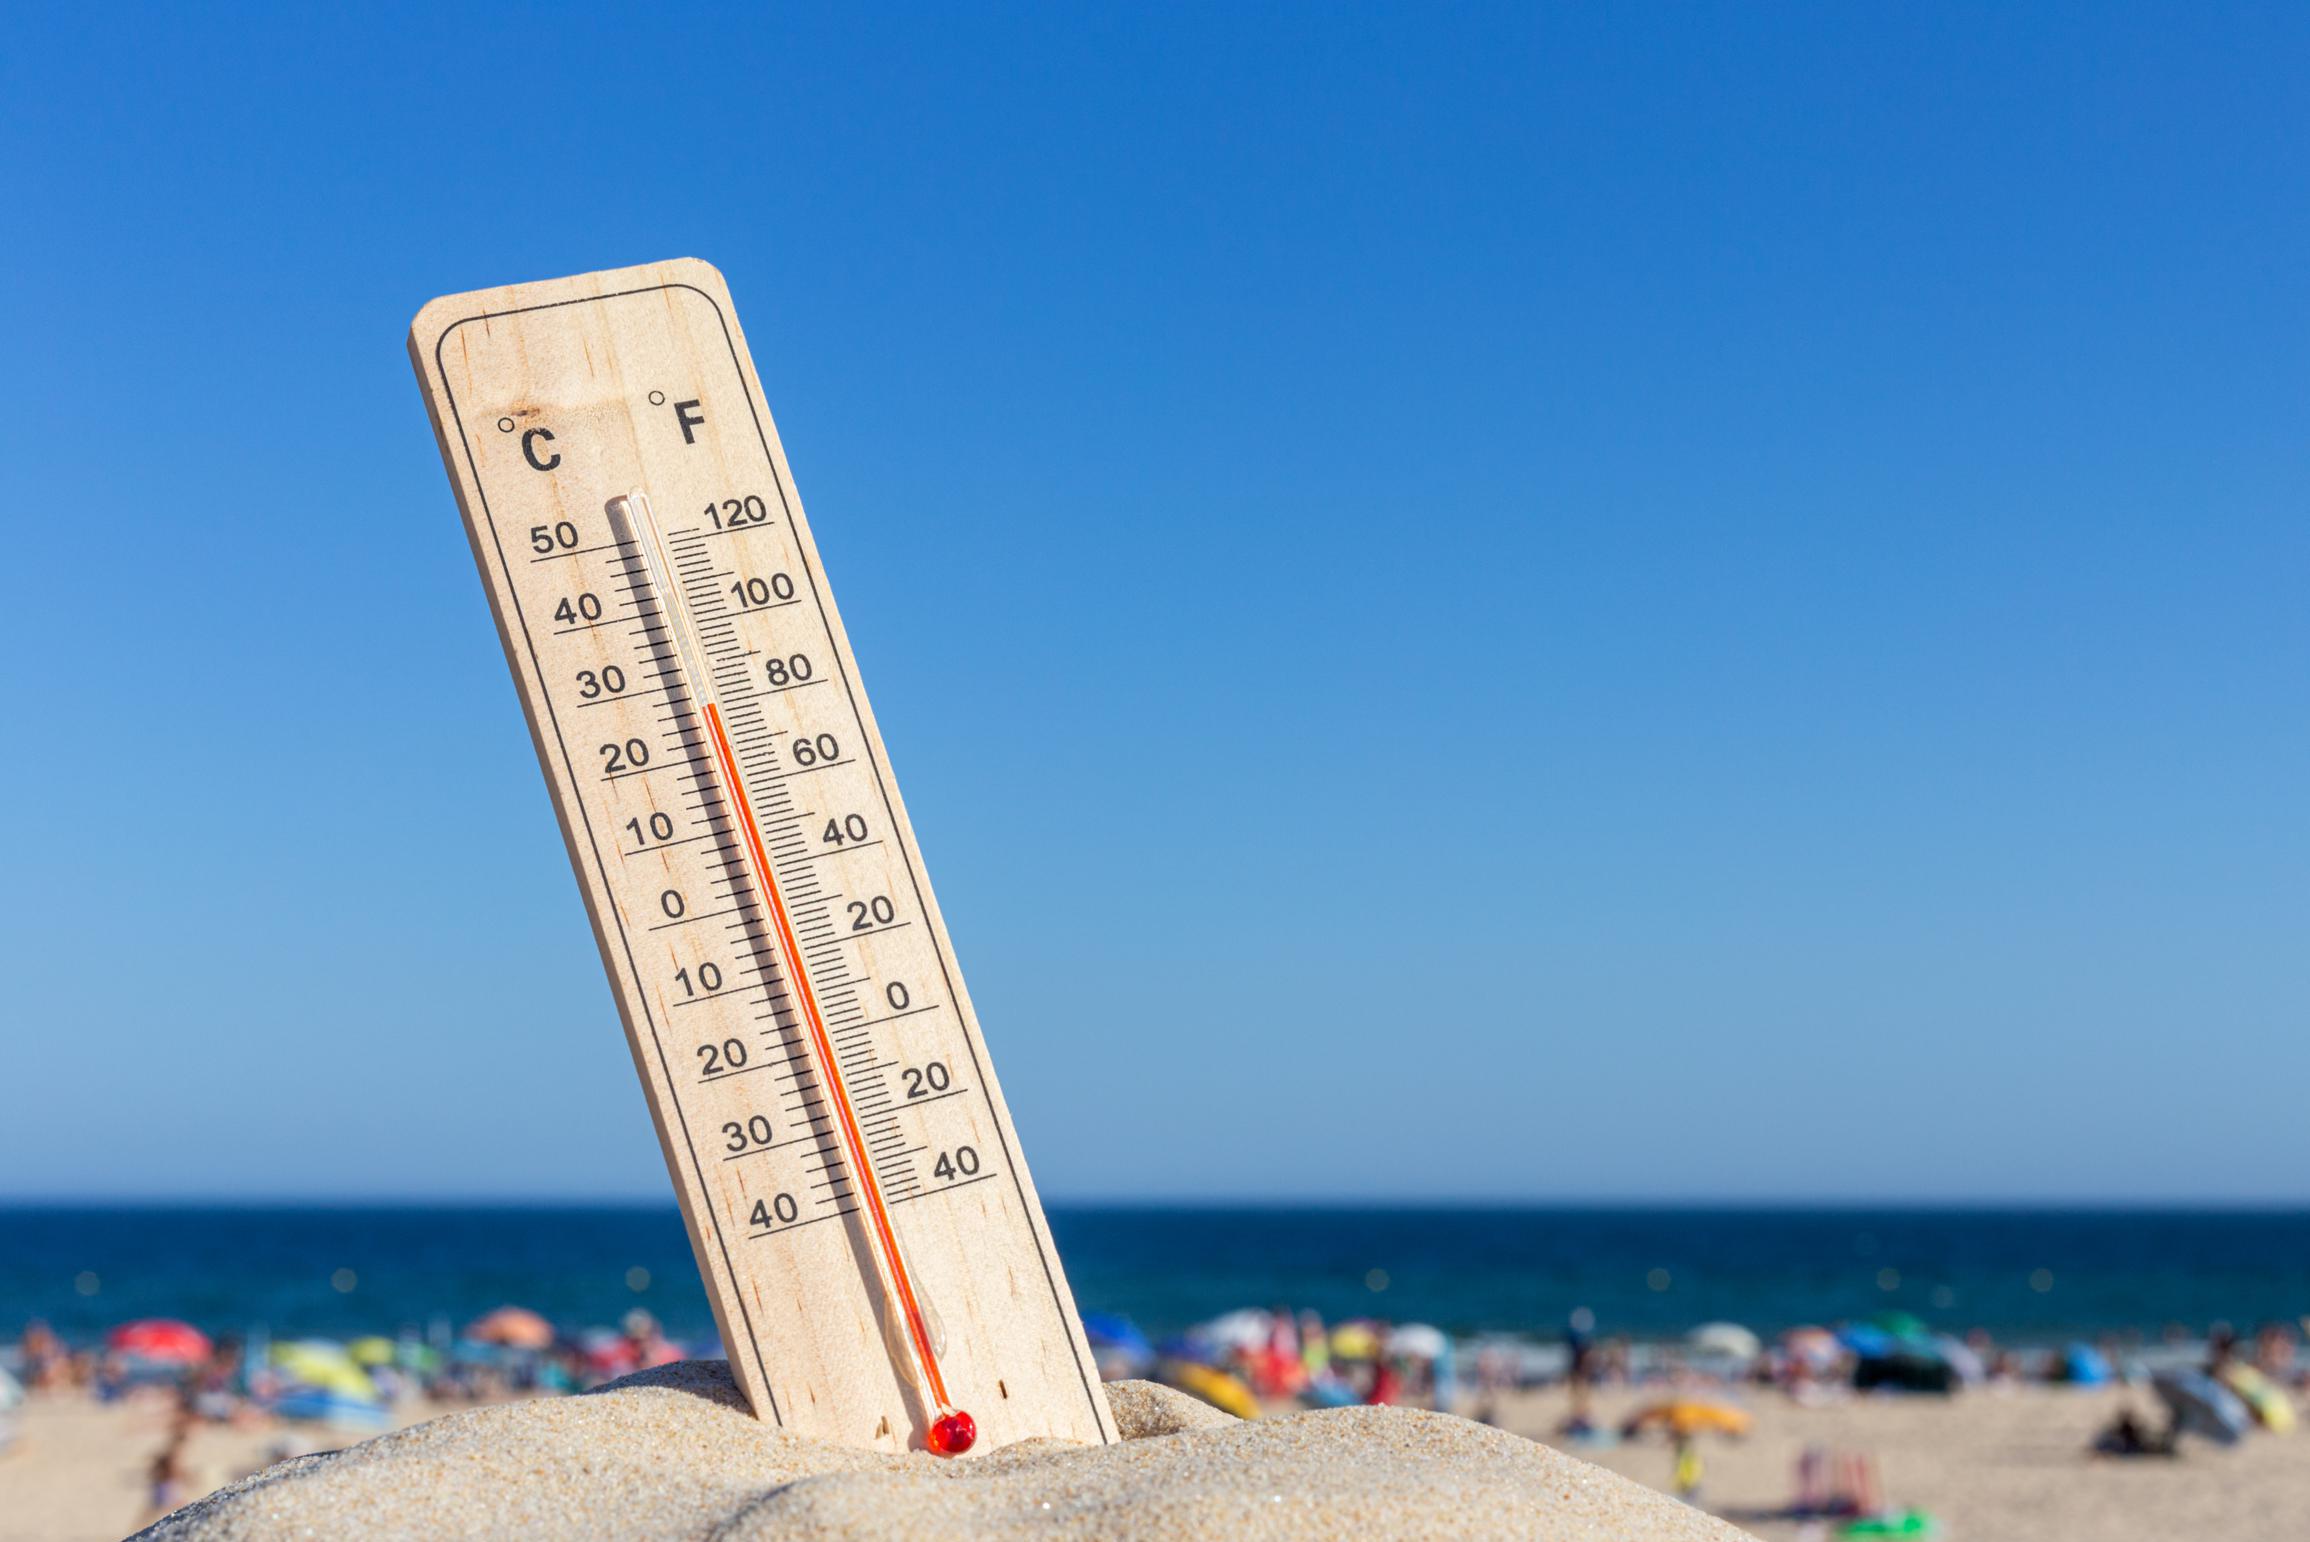 Много предупреждений и экстремальных температур в соседних странах, мы тоже не можем избежать жары: «Вестхук будет самым теплым местом»